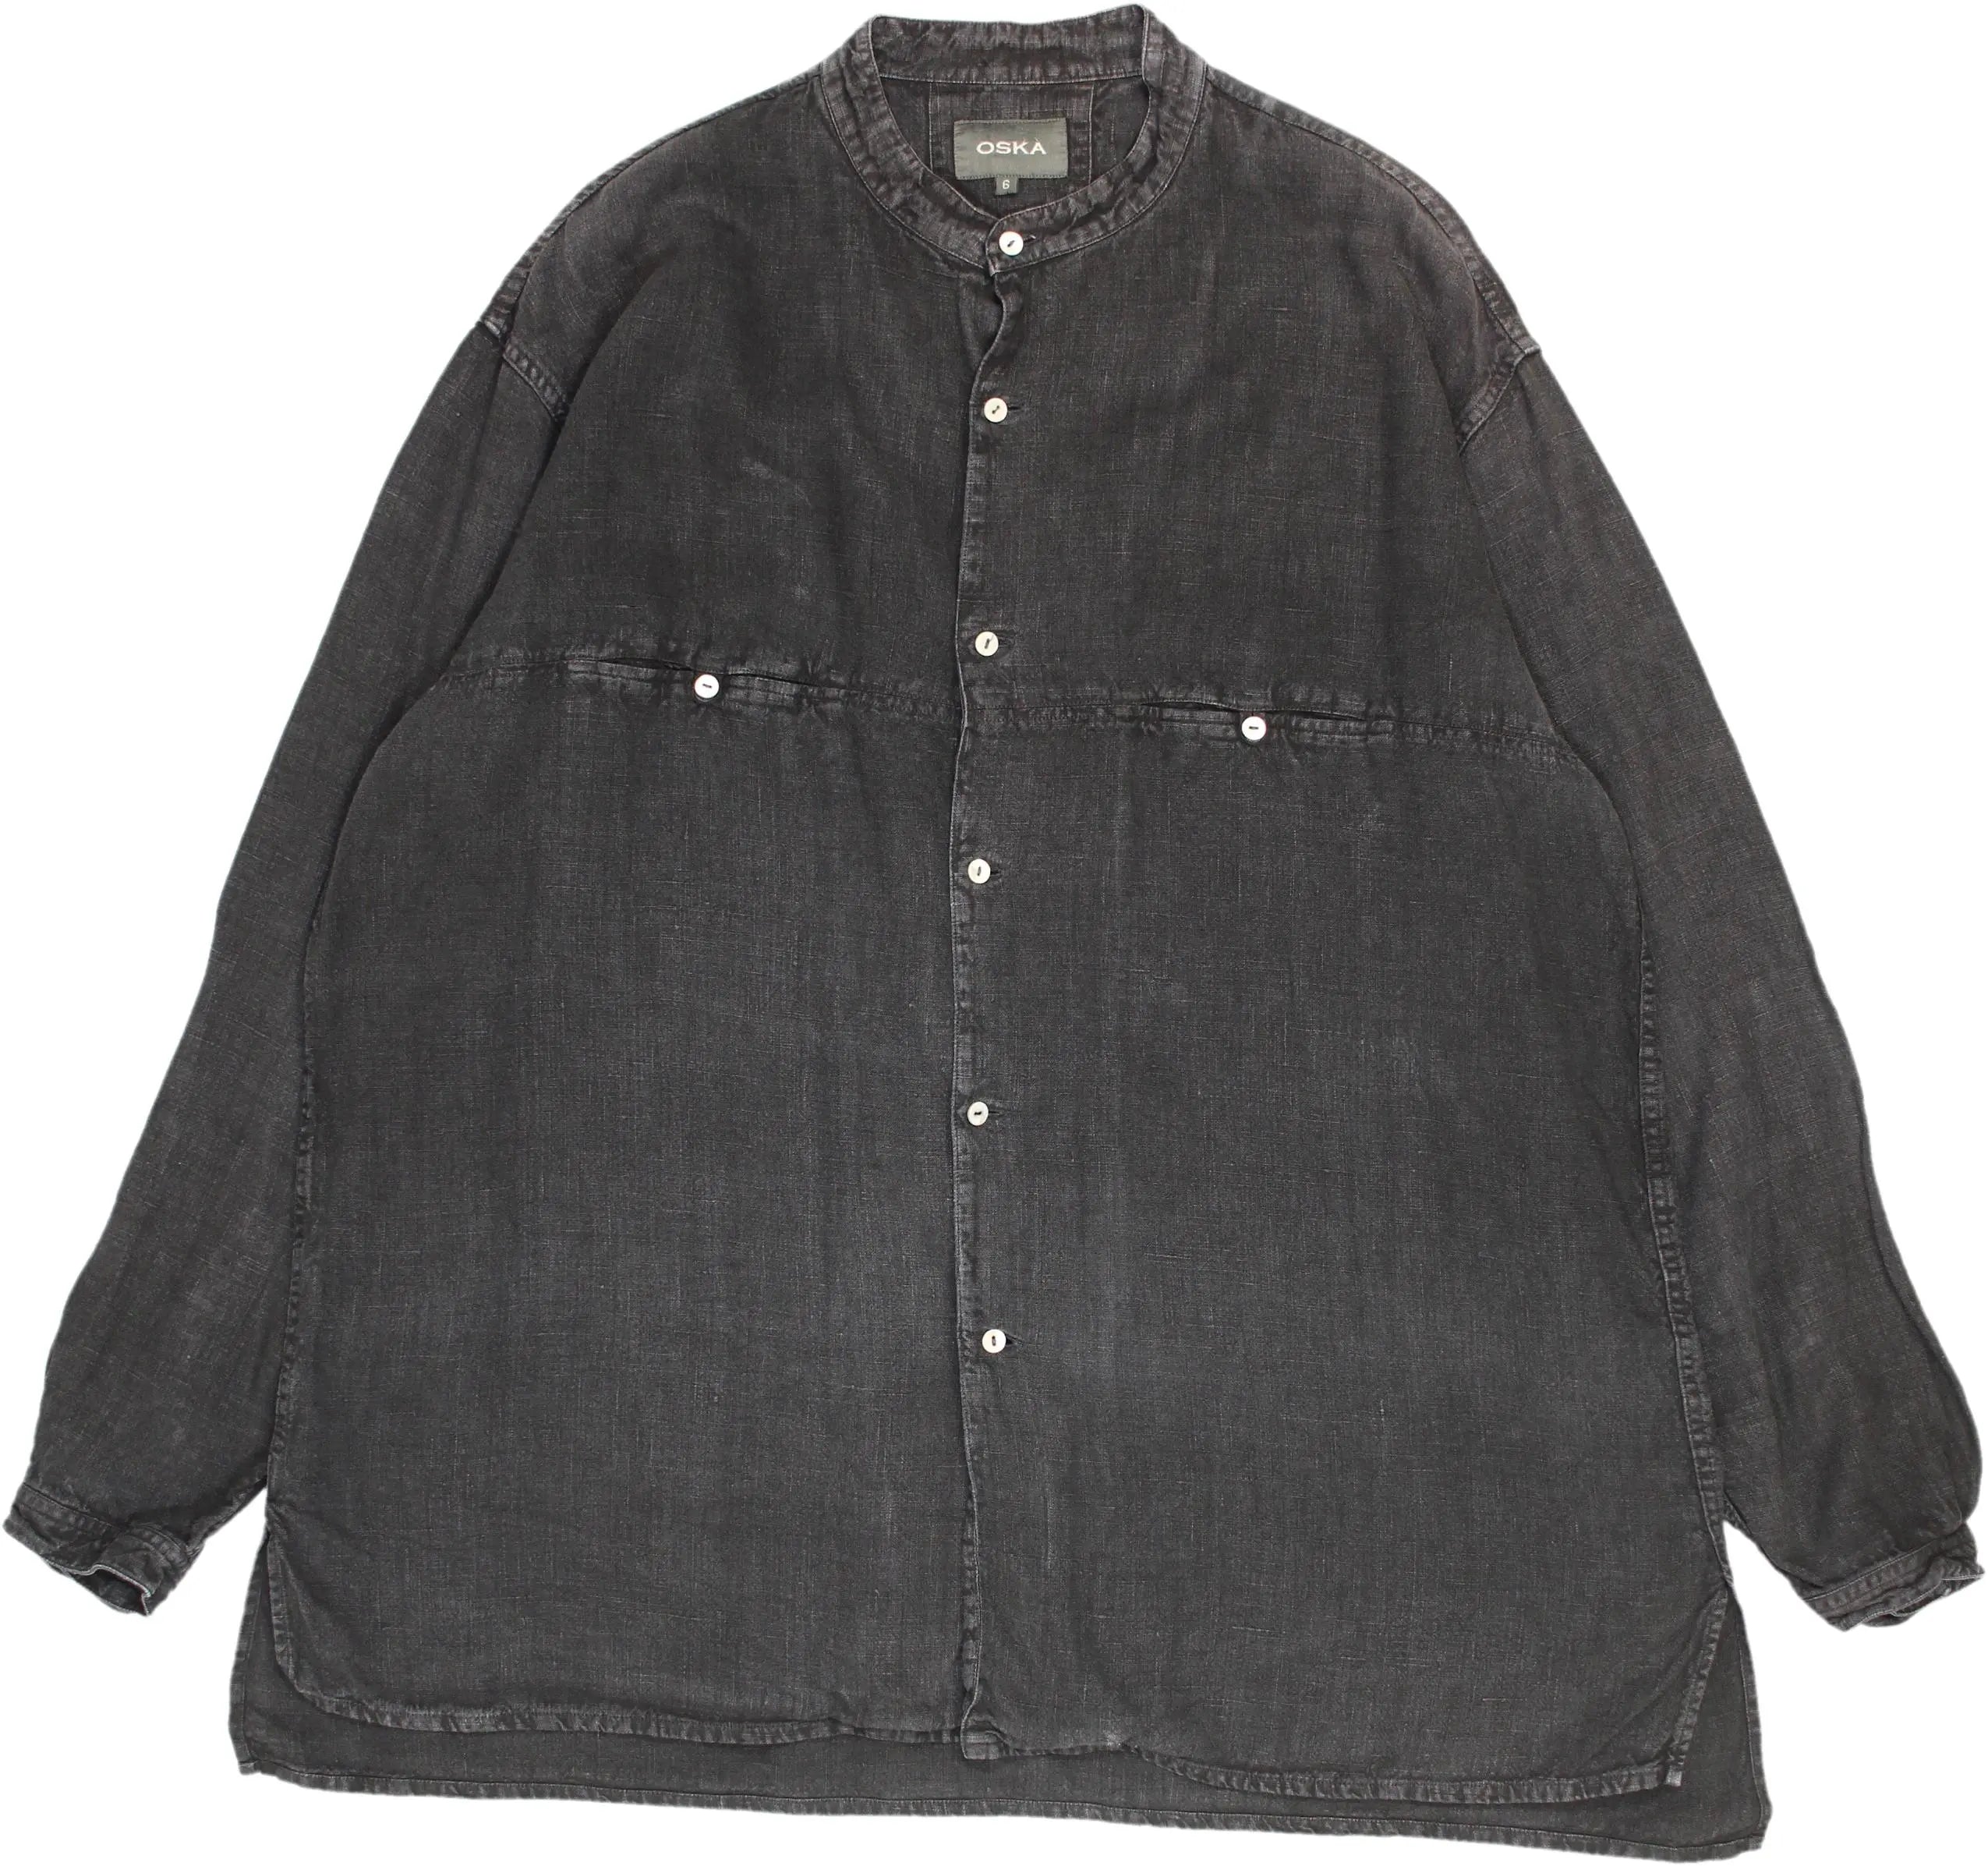 Oska - Denim Shirt- ThriftTale.com - Vintage and second handclothing